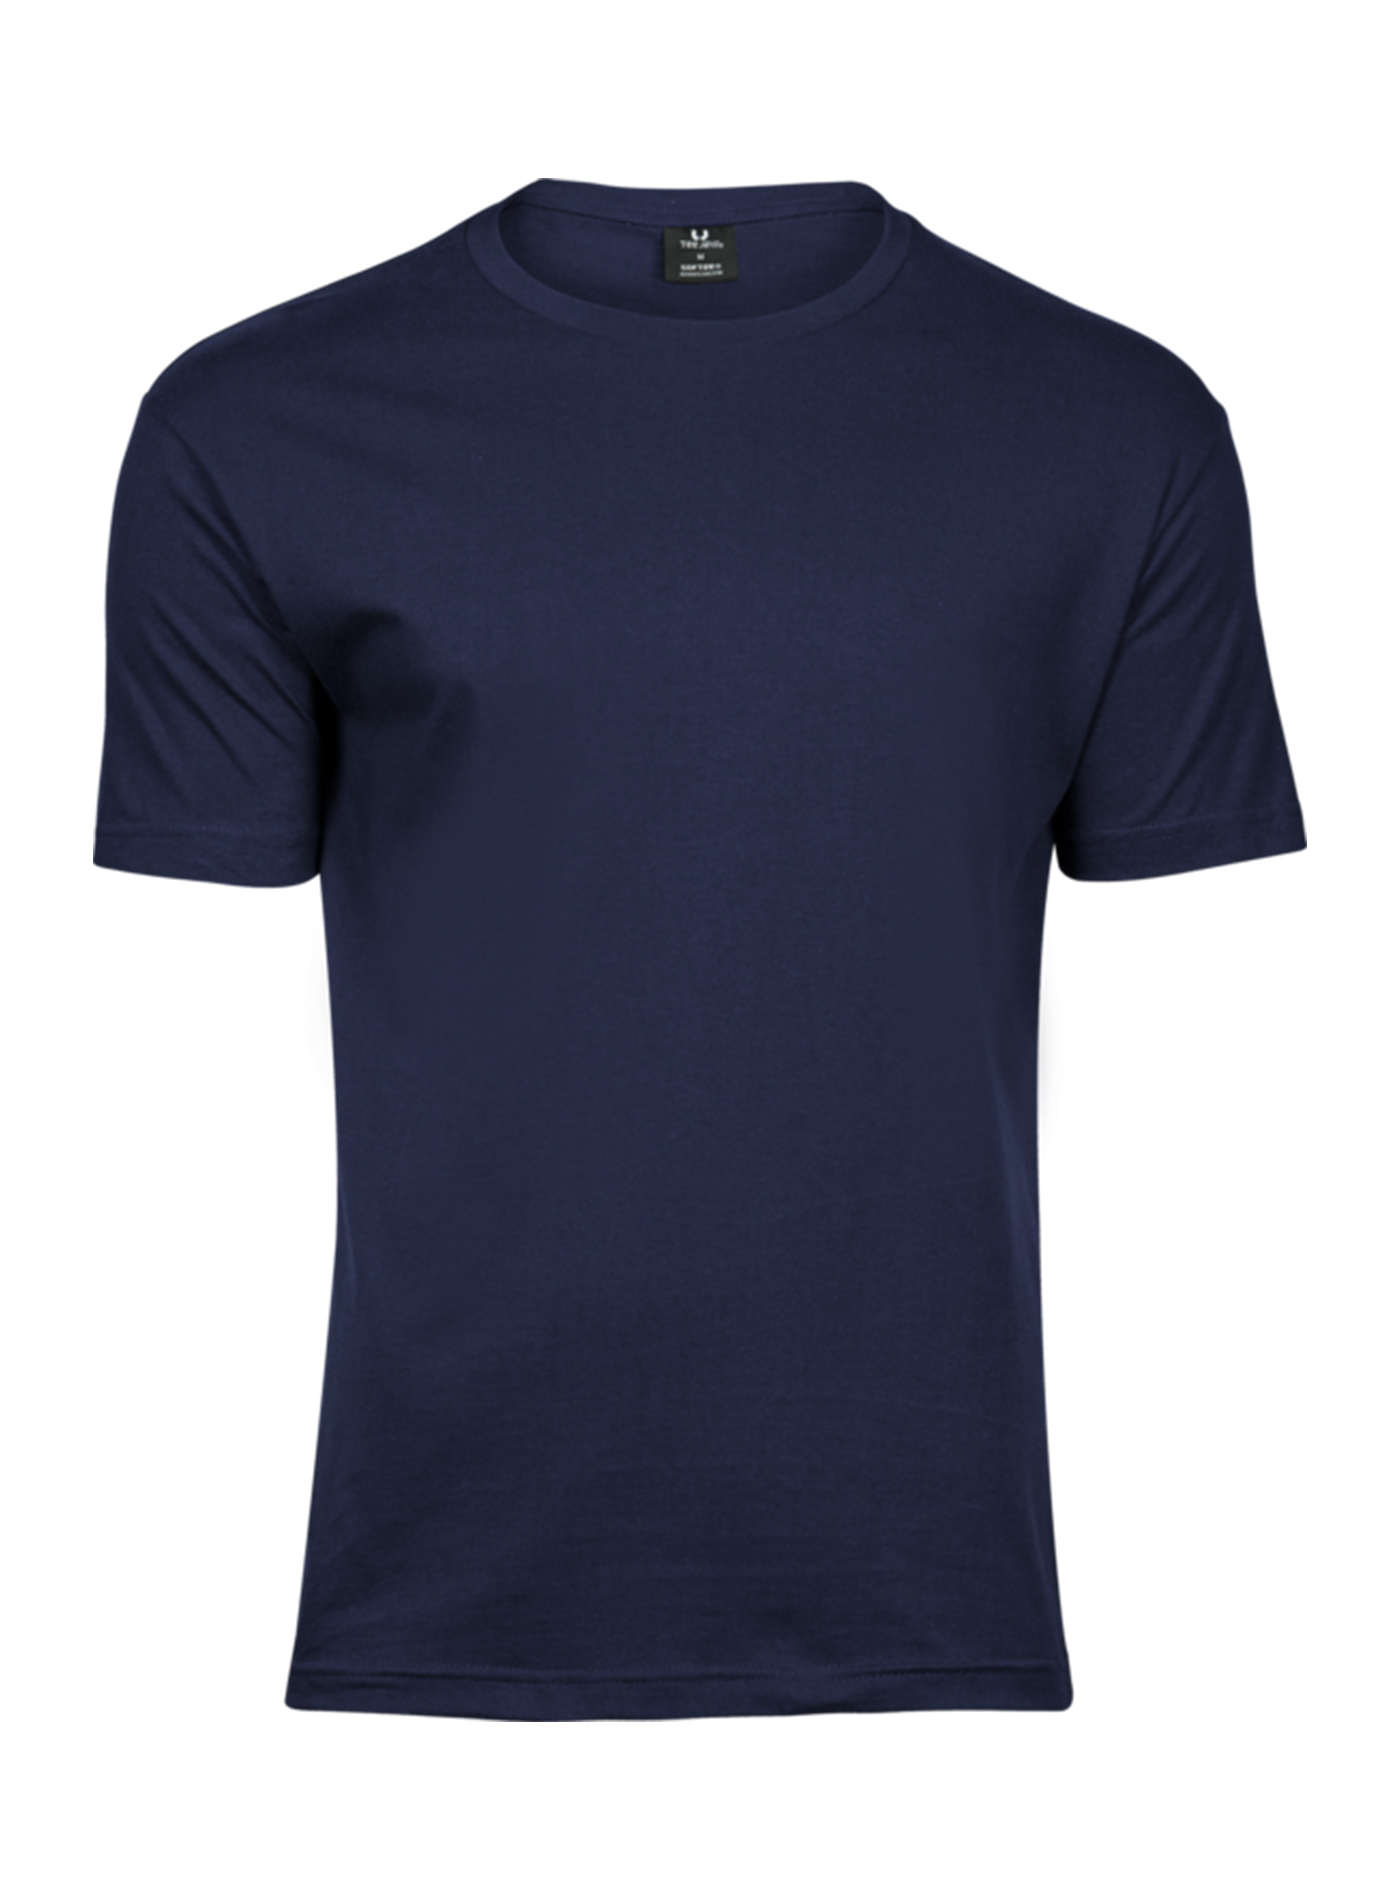 Pánské tričko Fashion Tee Jays - Námořní modrá XL